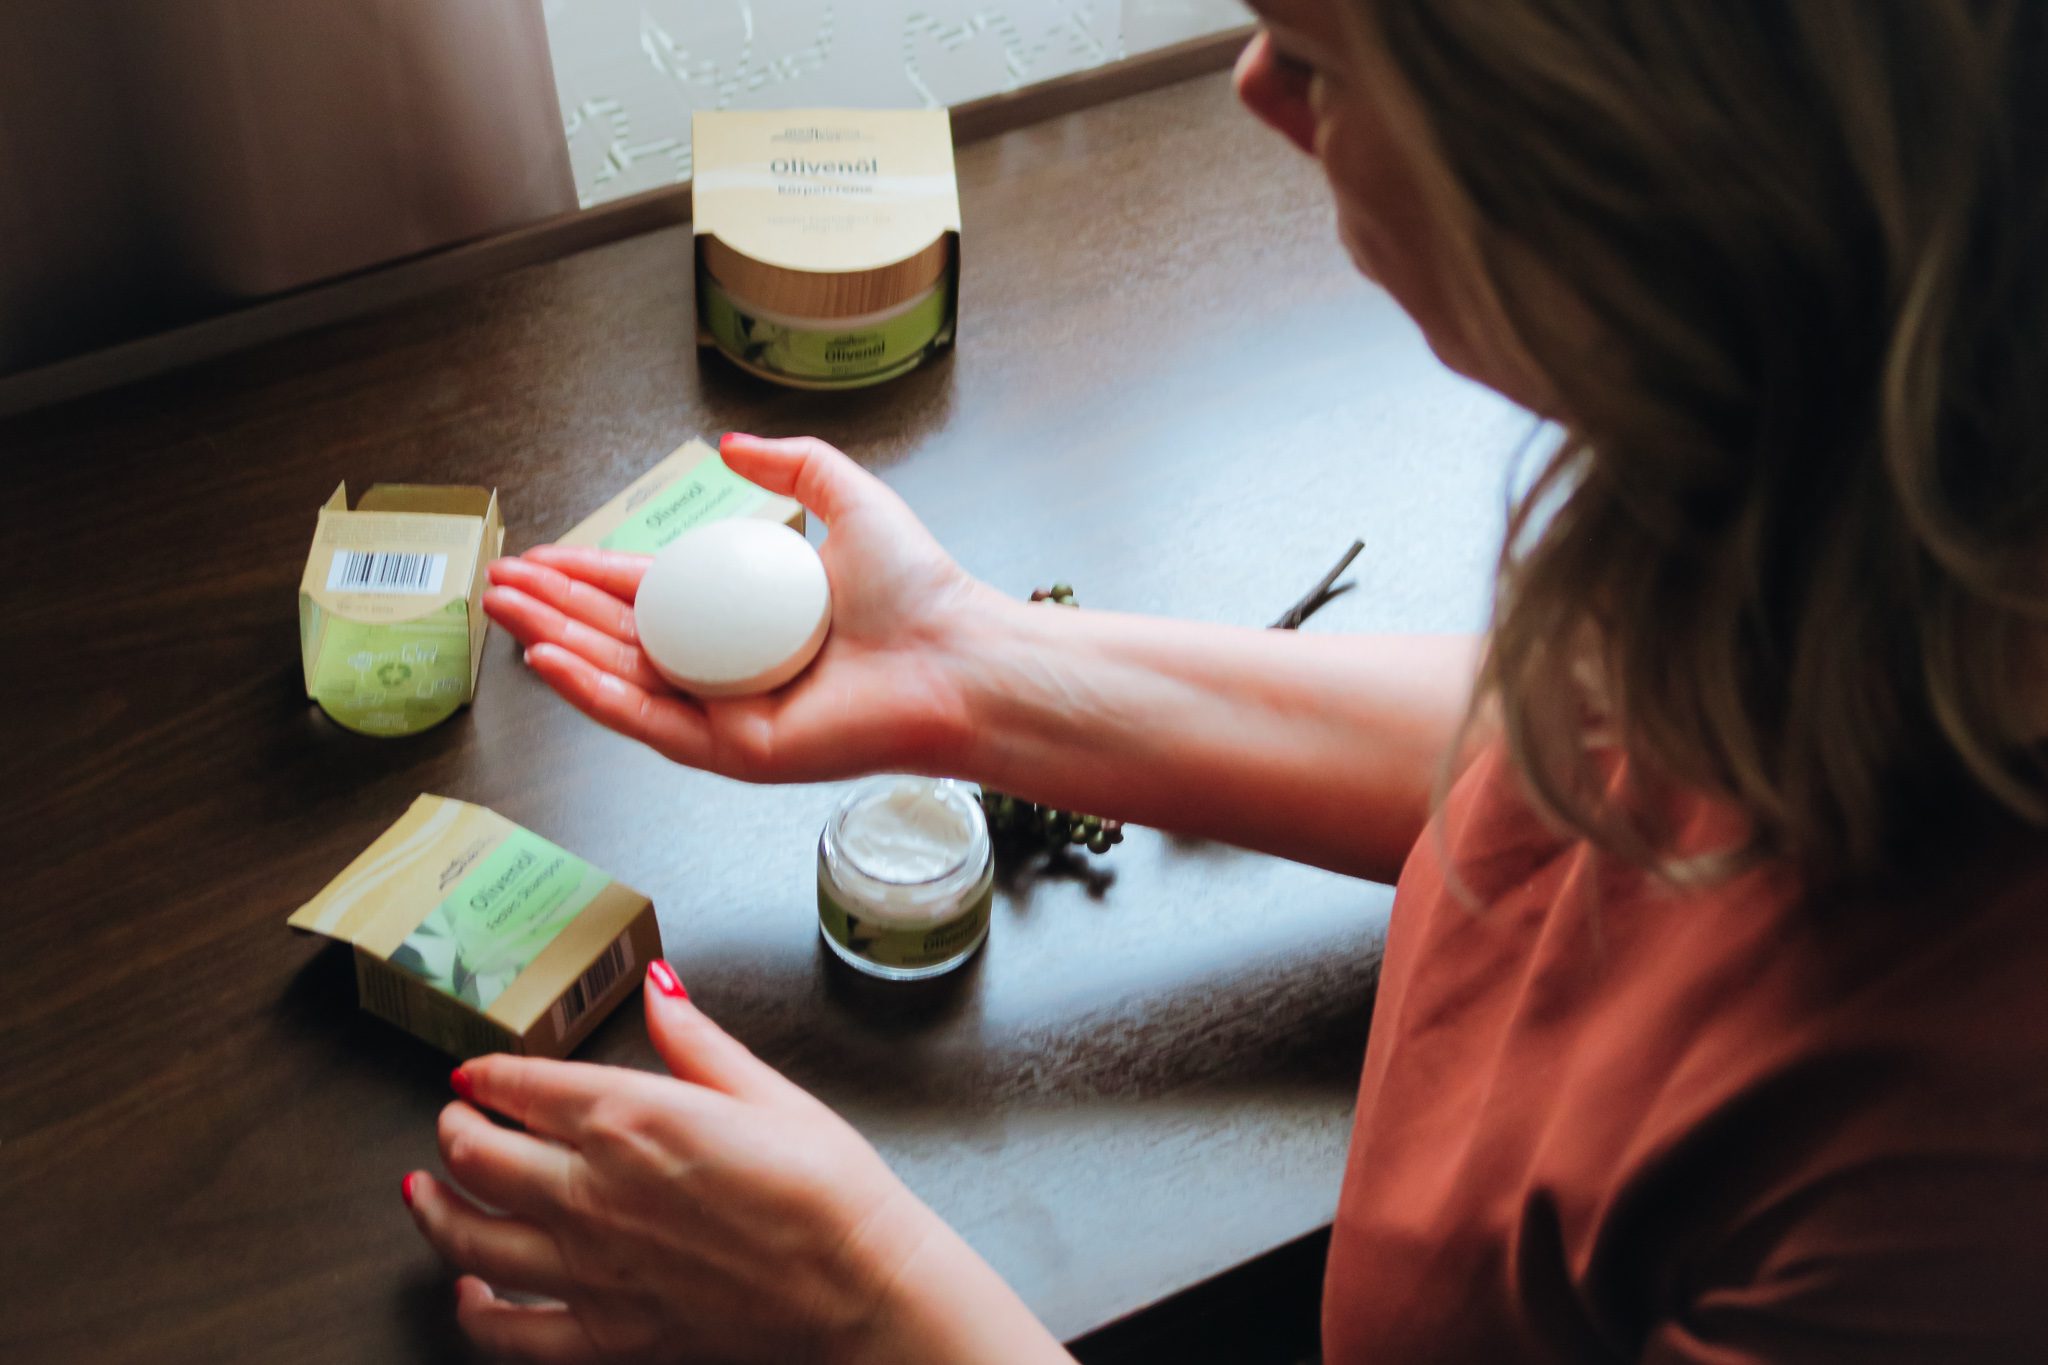 Die nachhaltige Bio-Olivenöl-Pflegeserie von medipharma cosmetics aus der Apotheke im Test